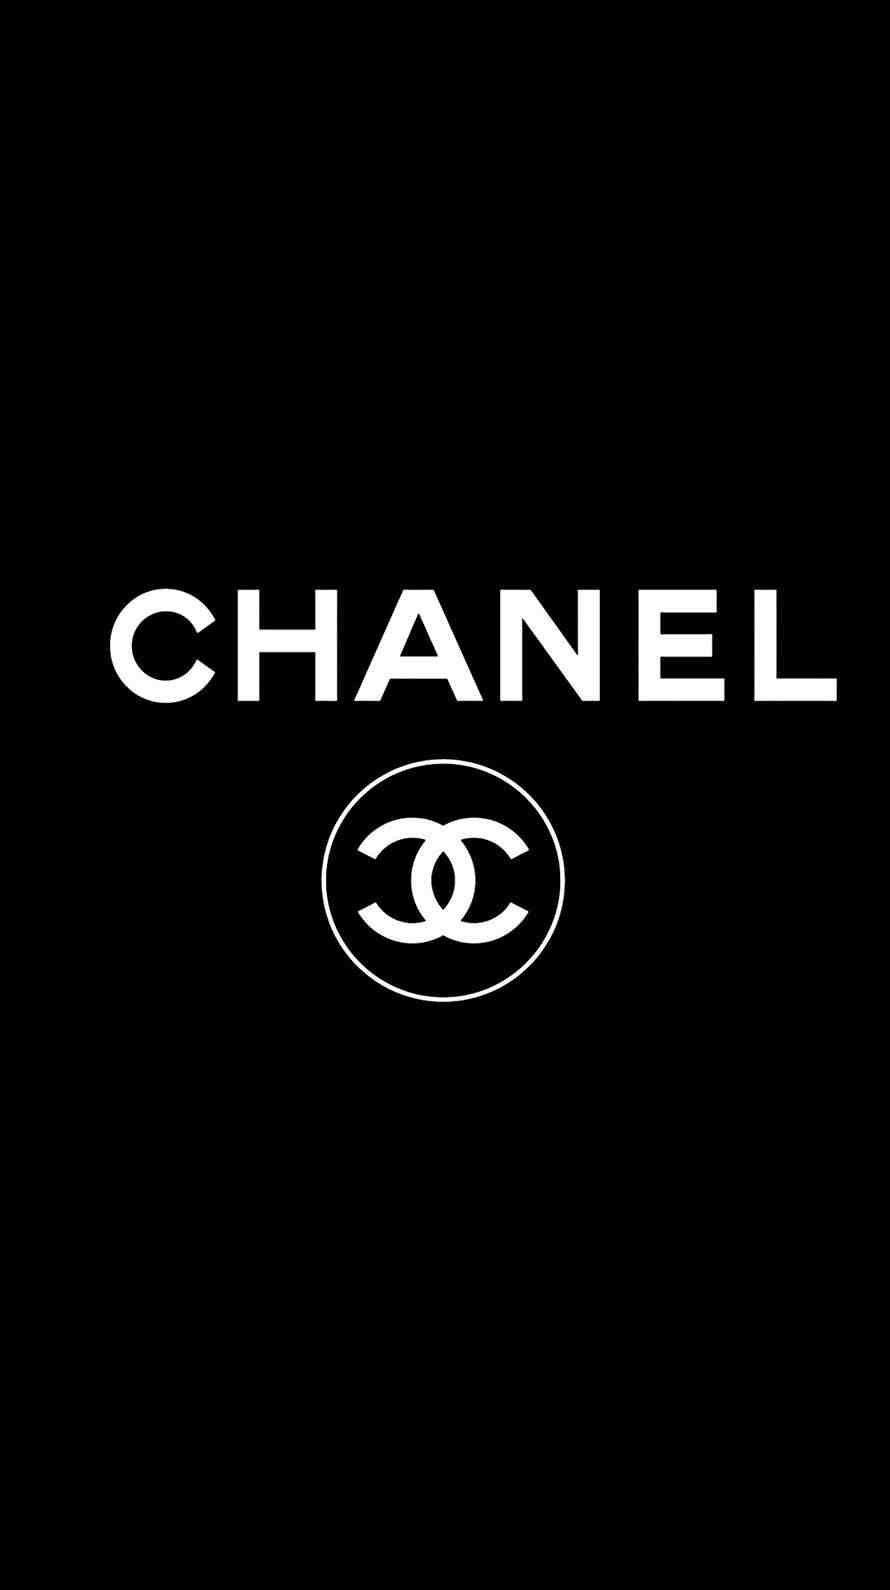 Hình nền  3908x2994 px Chanel Logo Nền màu hồng 3908x2994  wallhaven   1278861  Hình nền đẹp hd  WallHere